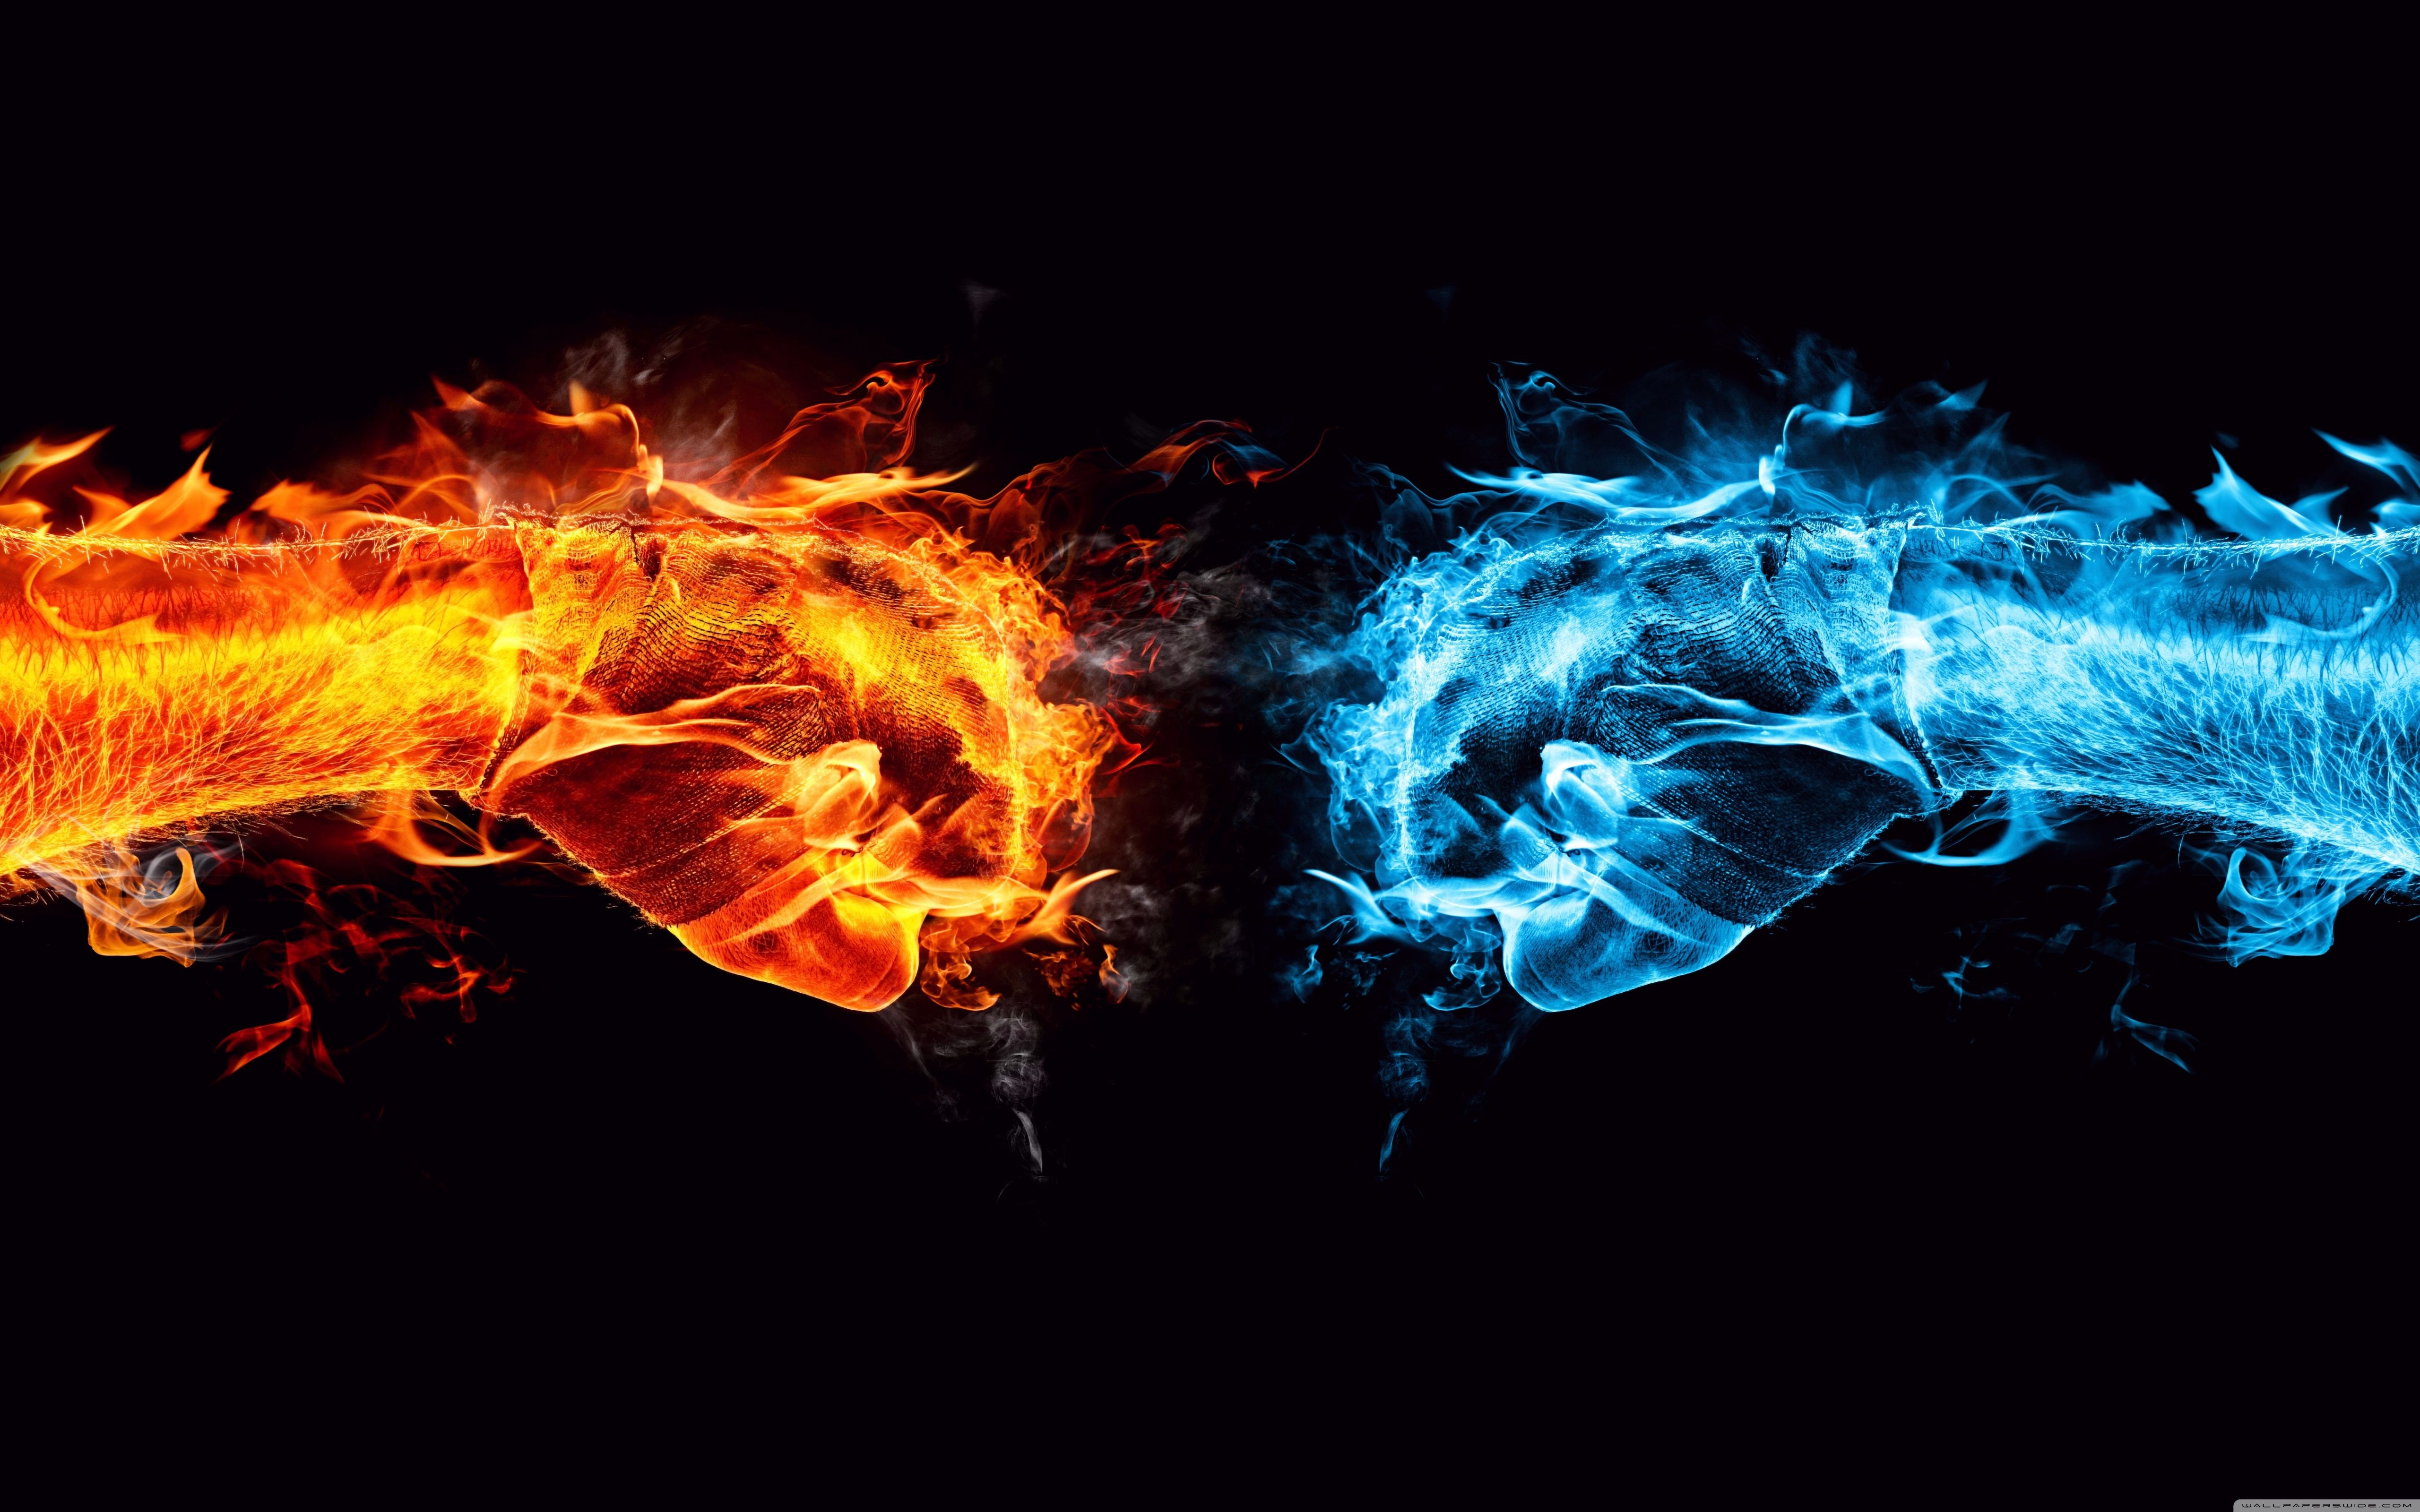 Fire Fist vs Water Fist ❤ 4K HD Desktop Wallpapers for 4K Ultra HD